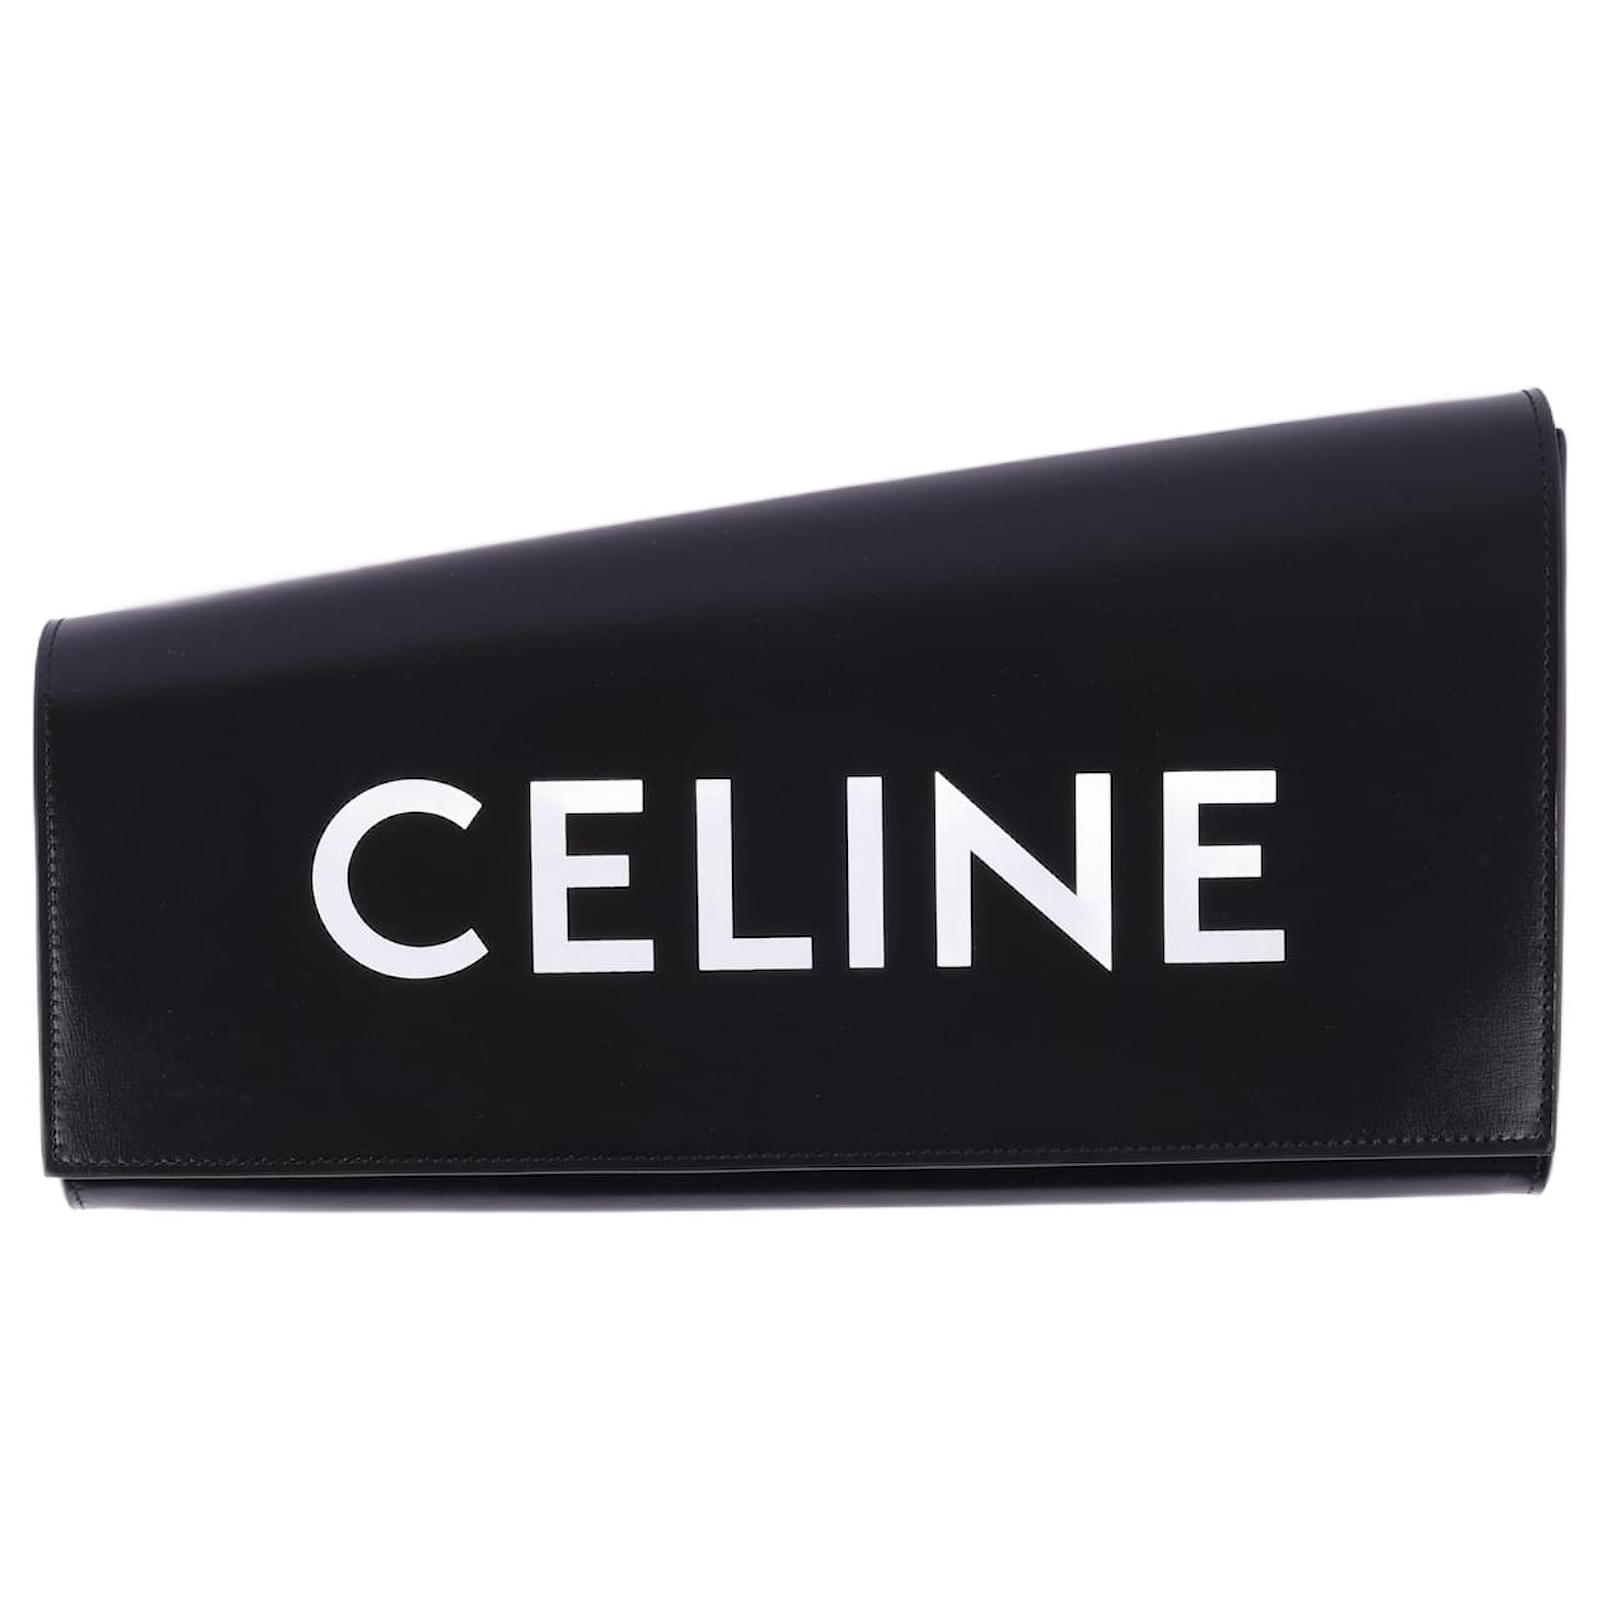 Celine new logo